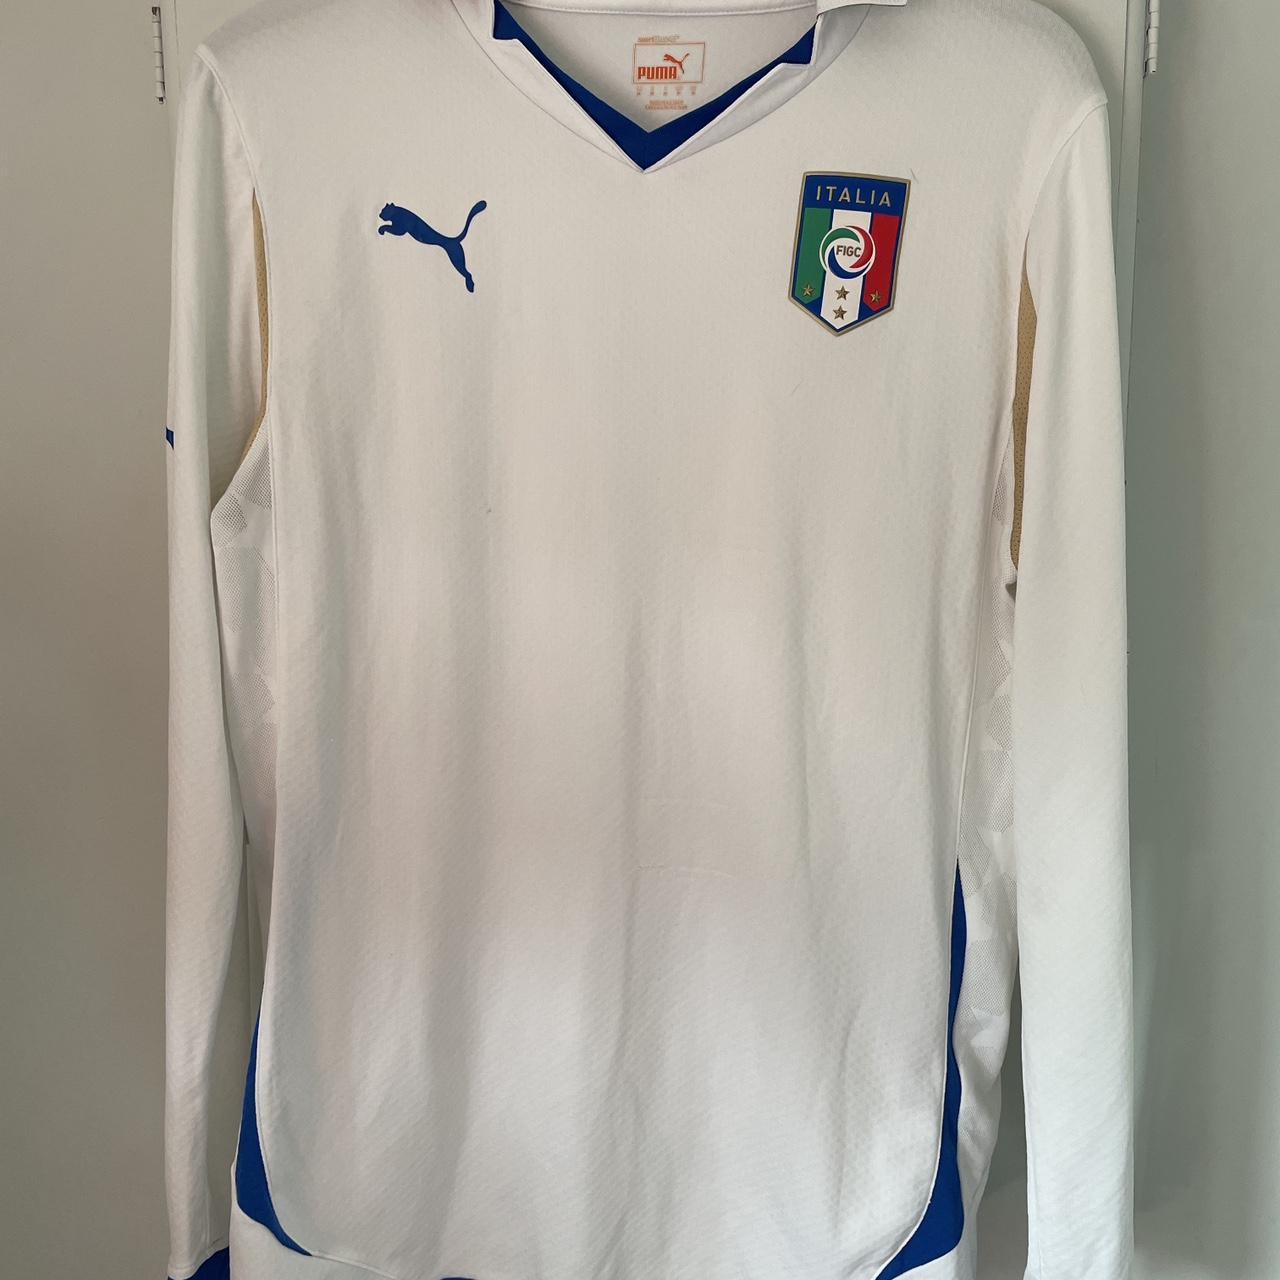 Italy 2010 Away Football Shirt Nice rare long... - Depop